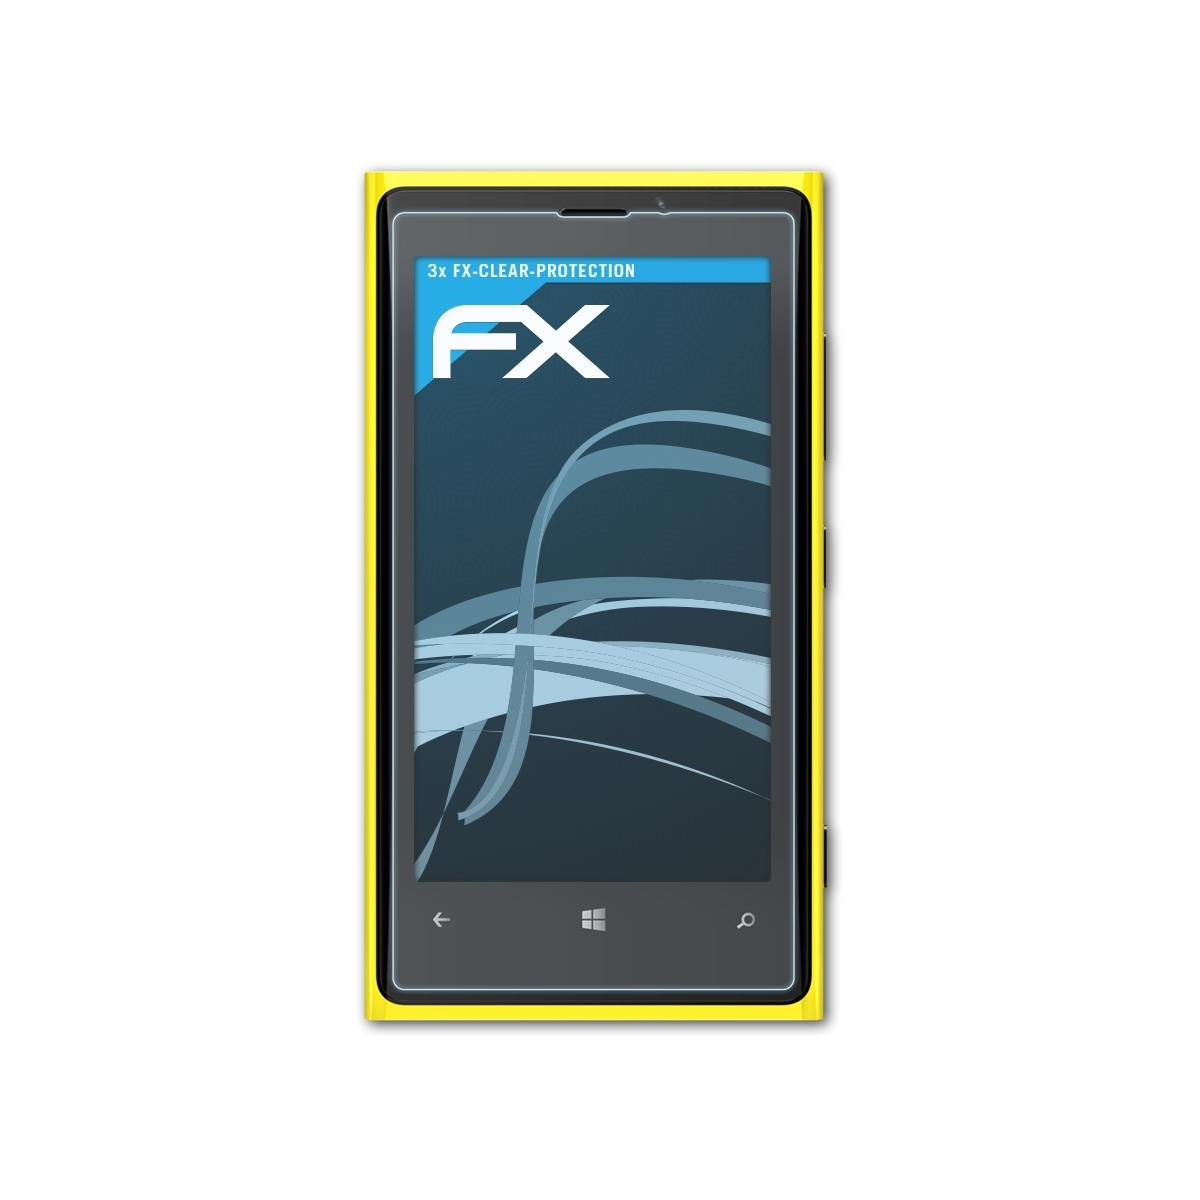 Lumia Displayschutz(für FX-Clear Nokia ATFOLIX 3x 920)